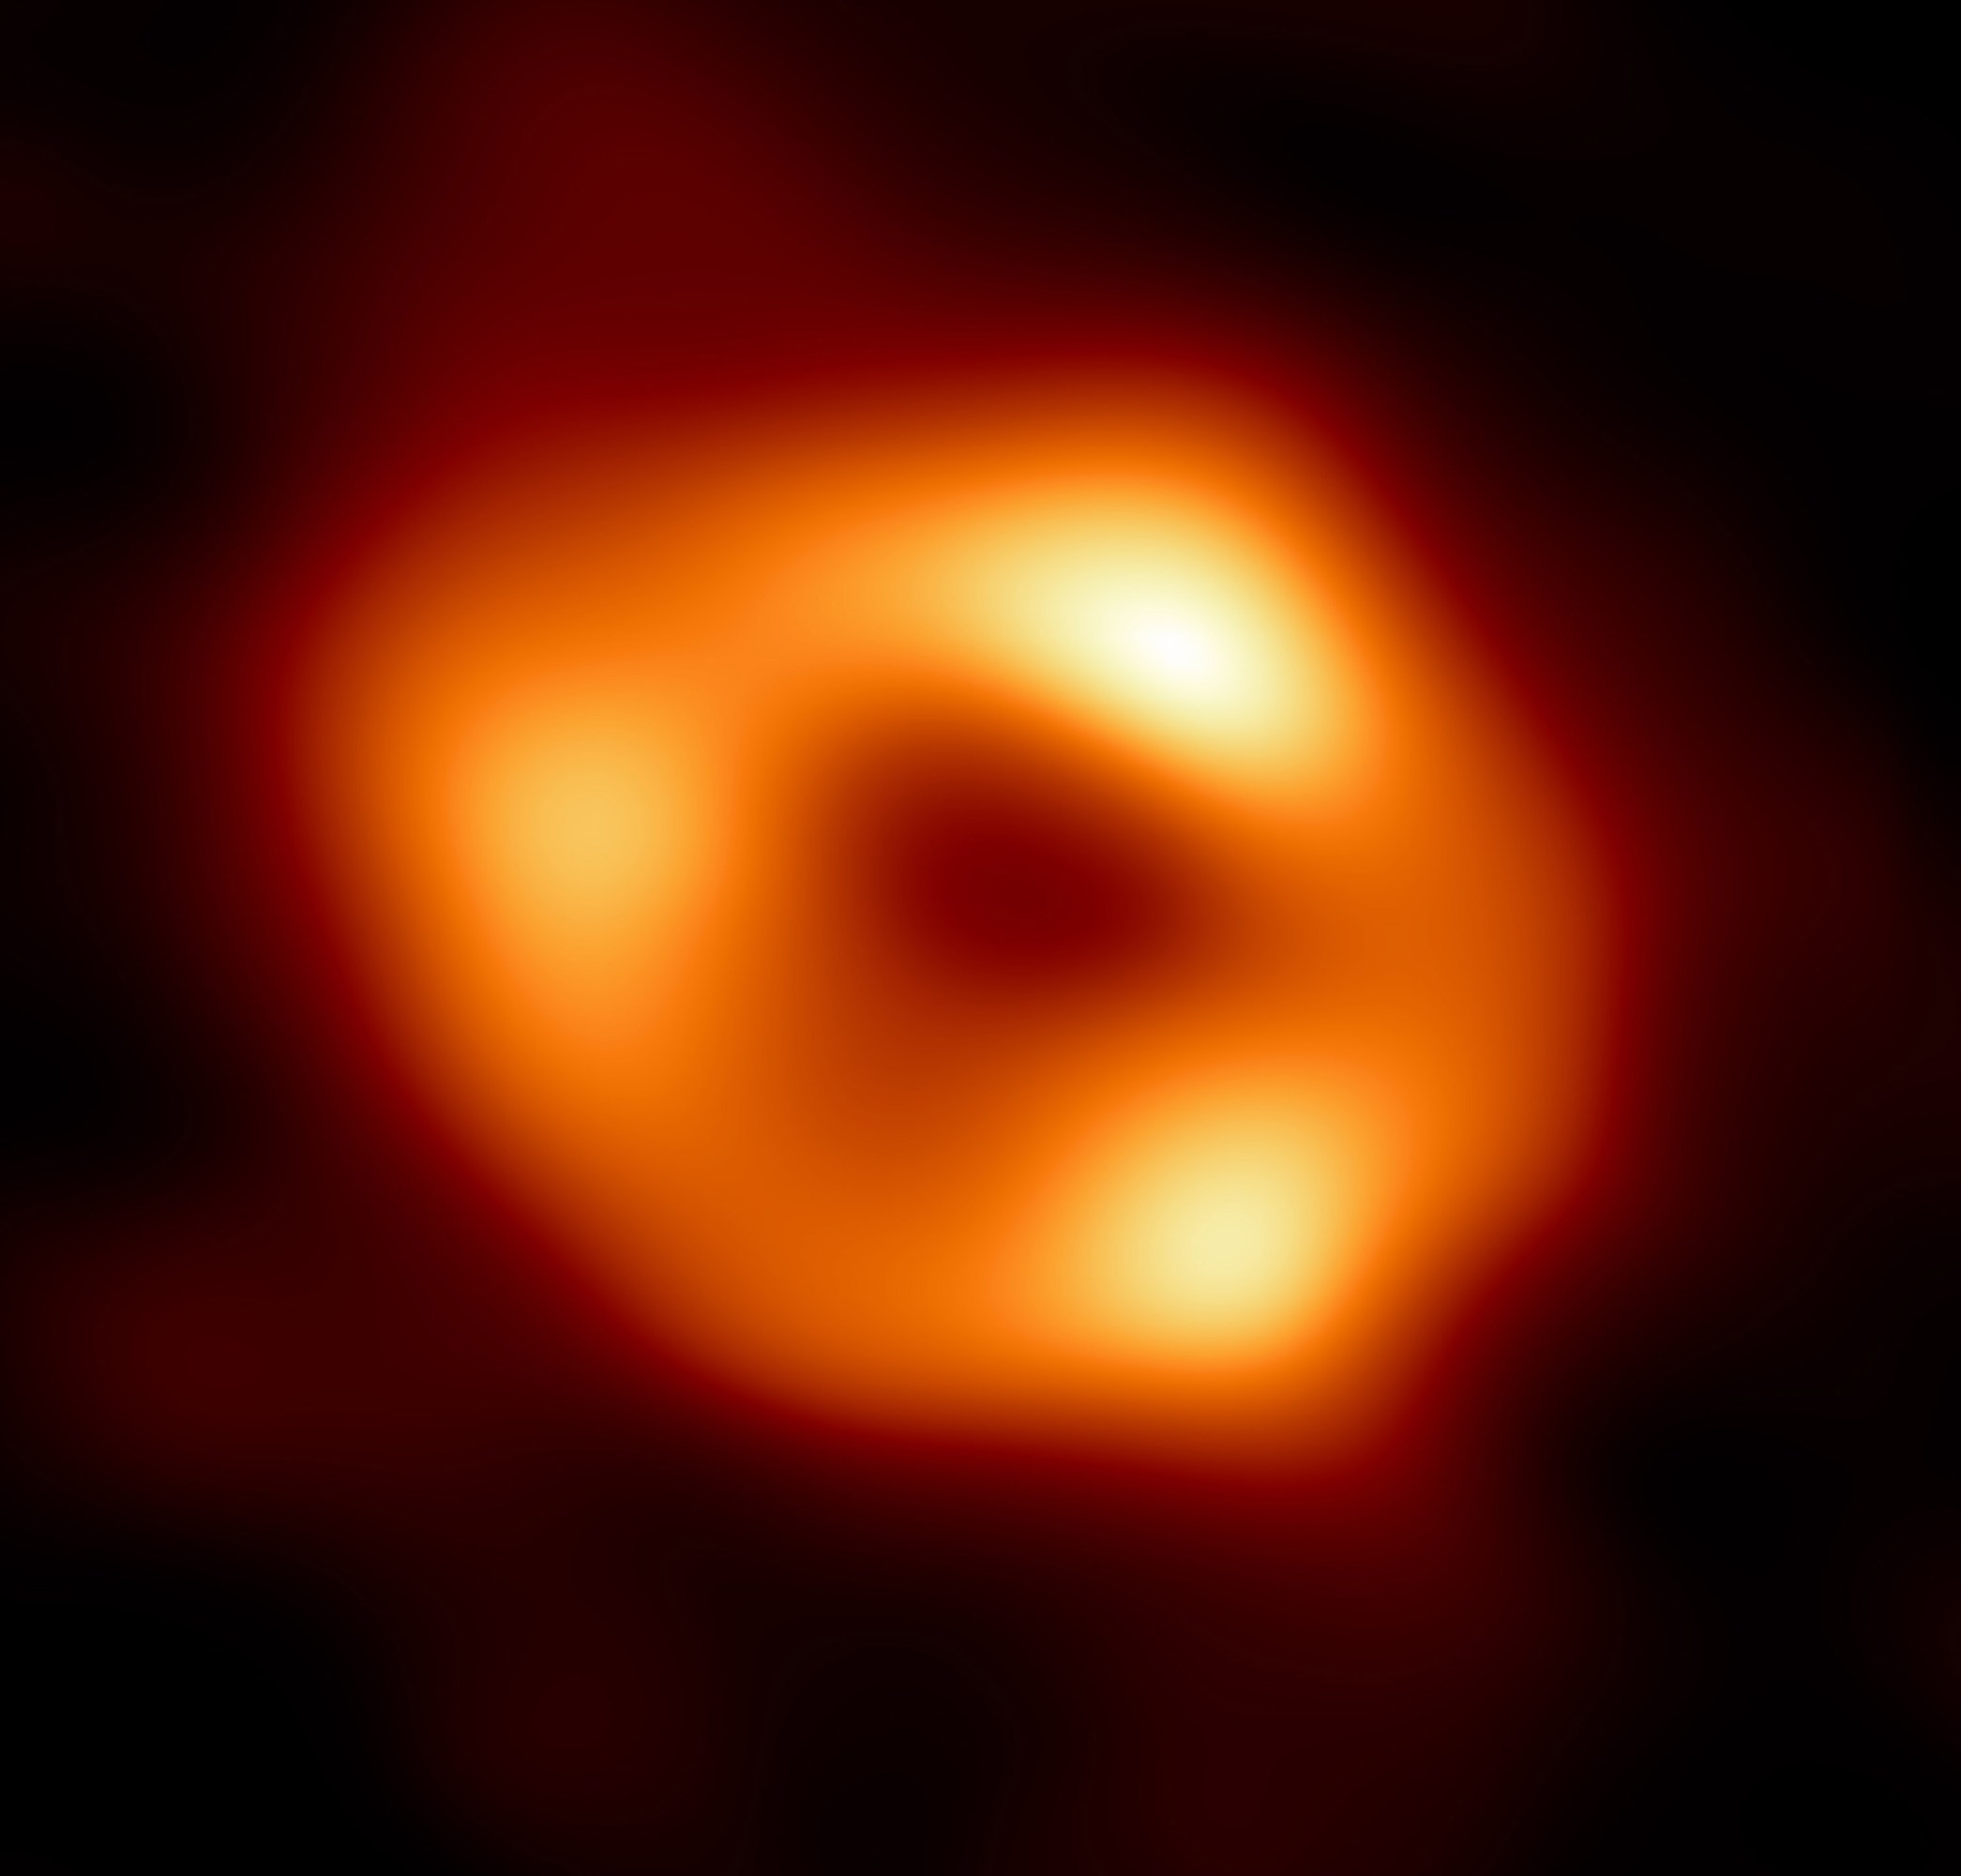 Supermassereiches Schwarzes Loch im Zentrum der Milchstraße